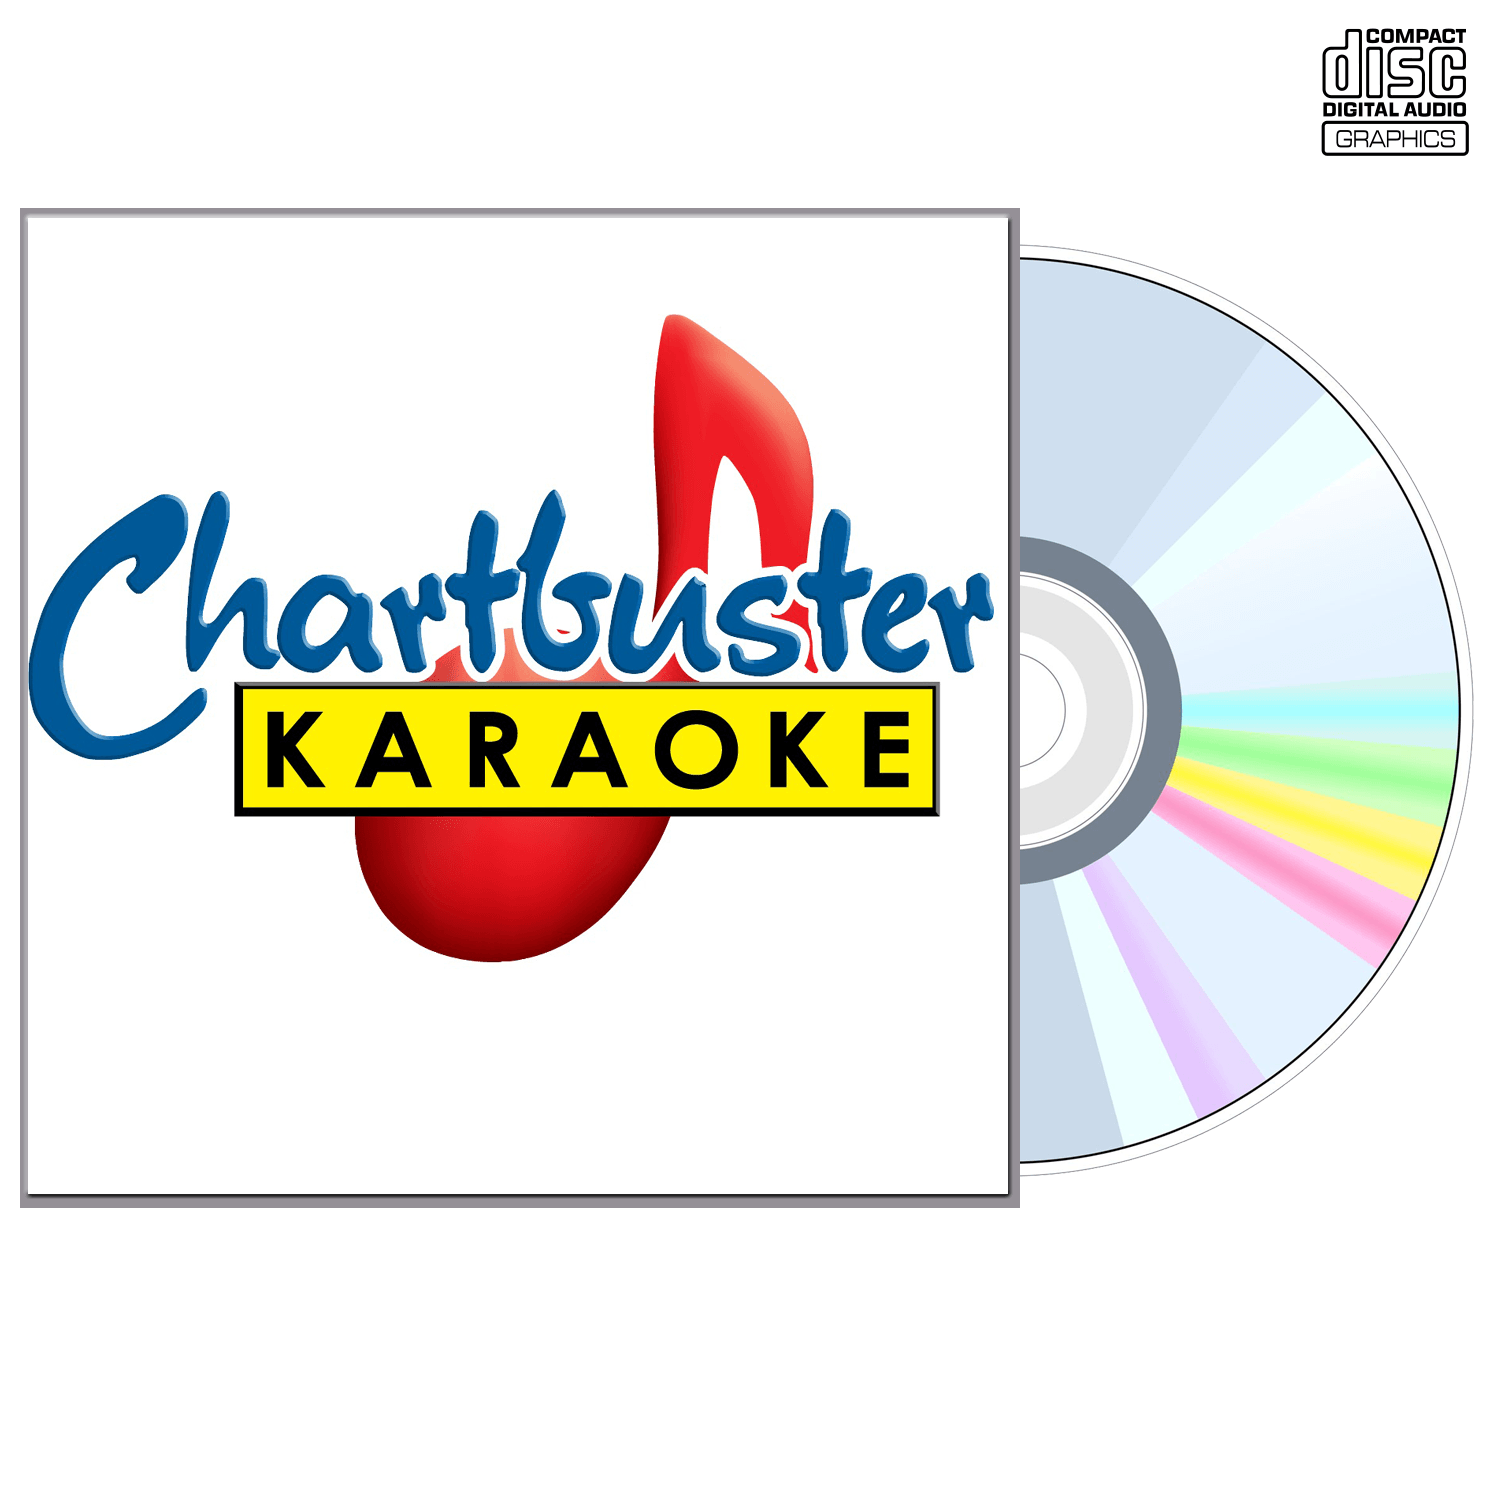 Kings Of Leon - CD+G - Chartbuster Karaoke - Karaoke Home Entertainment